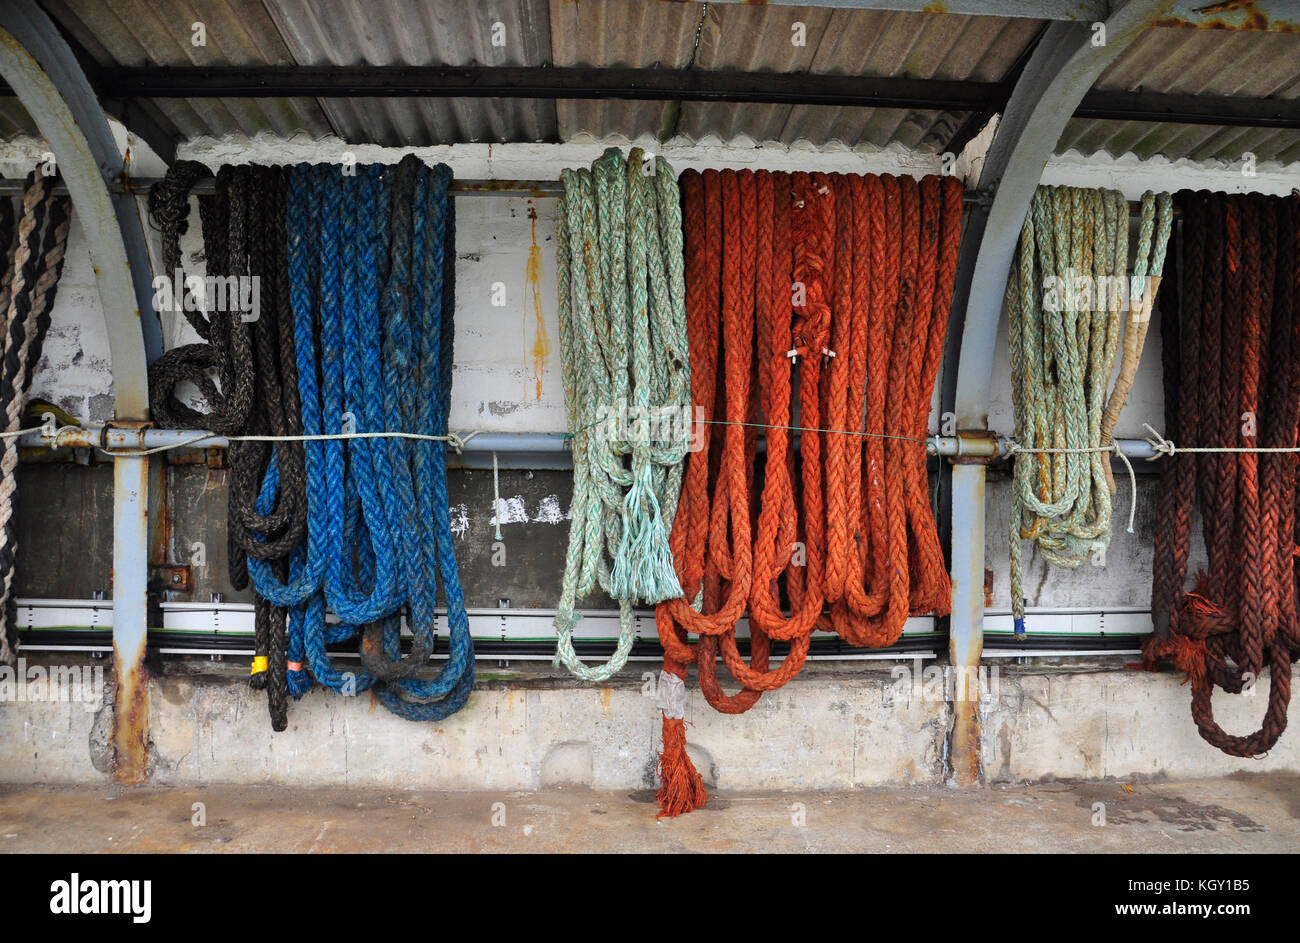 Helle farbige festmachen Seile. ordentlich aufgehängt und in einem auf dem Kai in Newlyn Harbour cornwall Schuppen gebunden, Großbritannien Stockfoto